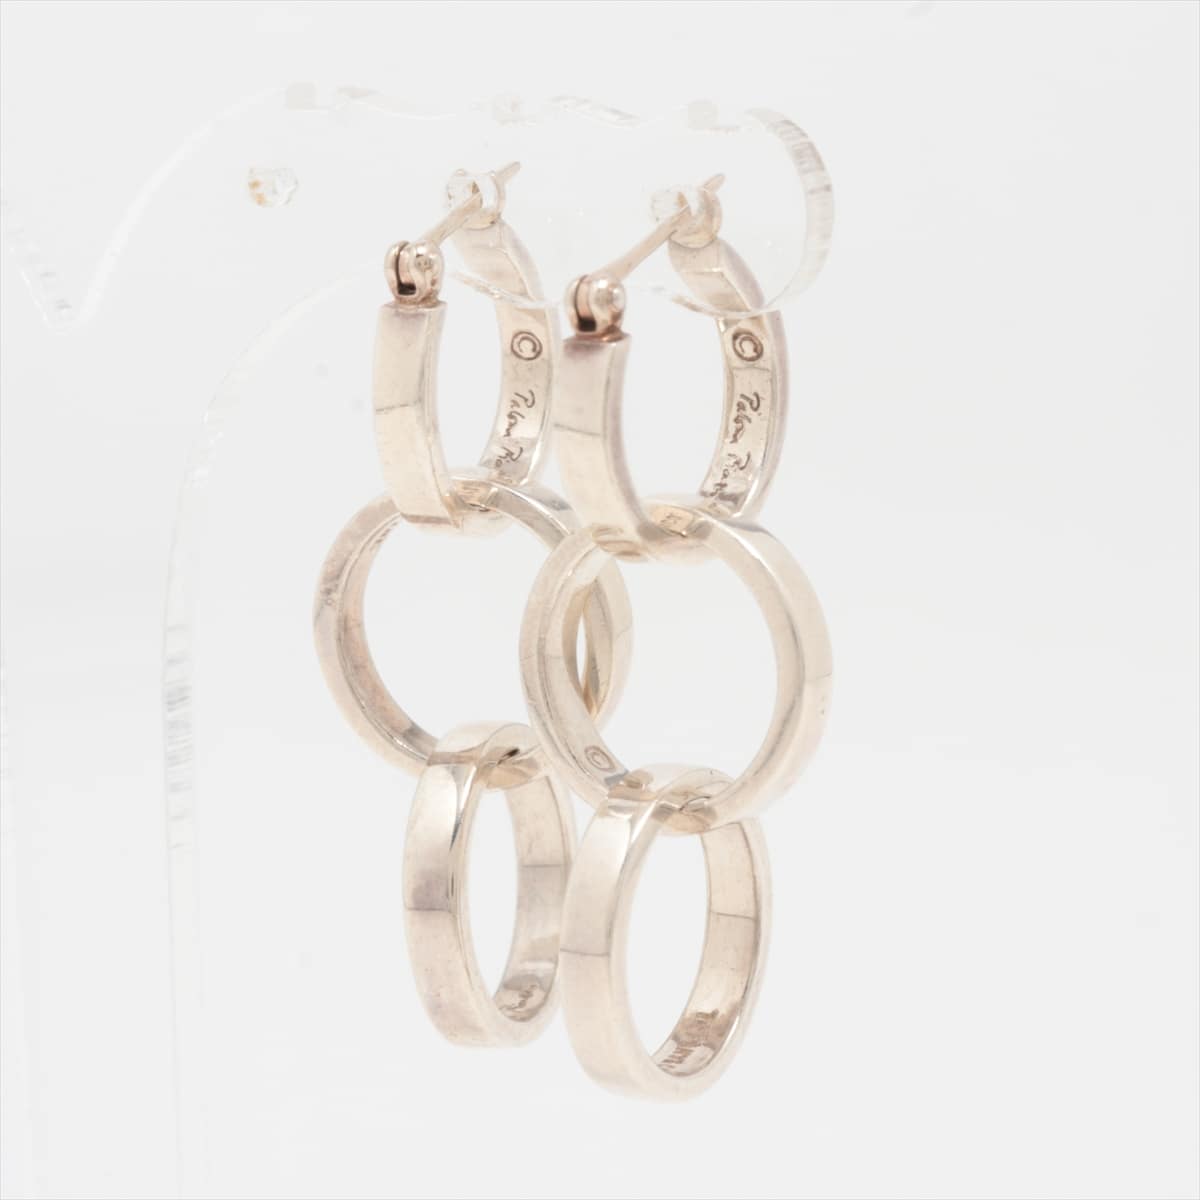 Tiffany triple hoop Narrow Piercing jewelry (for both ears) 925 8.8g Silver